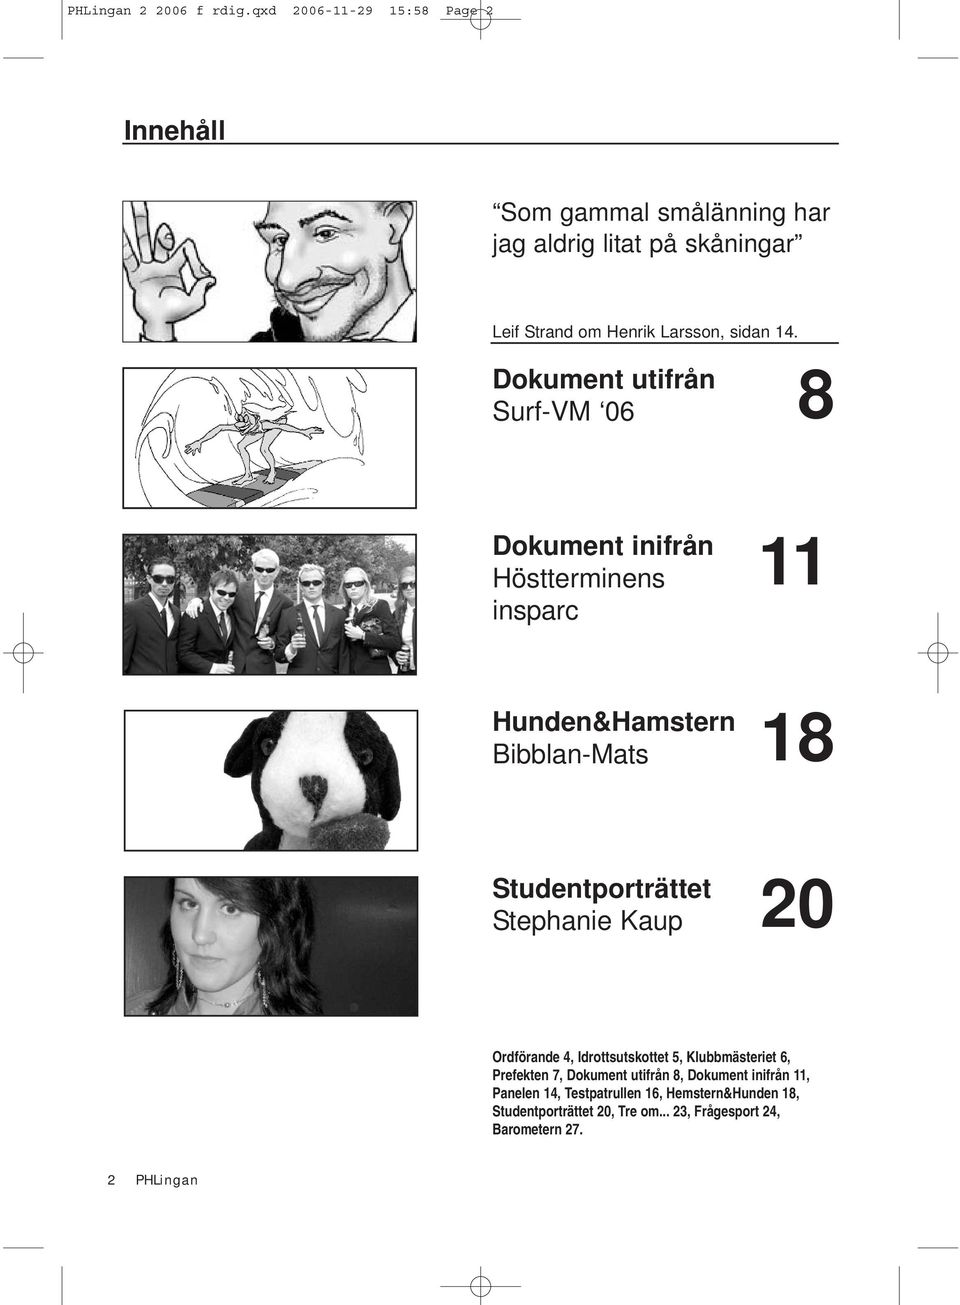 Dokument utifrån 8 Surf-VM 06 Dokument inifrån Höstterminens insparc 11 Hunden&Hamstern Bibblan-Mats 18 Studentporträttet Stephanie